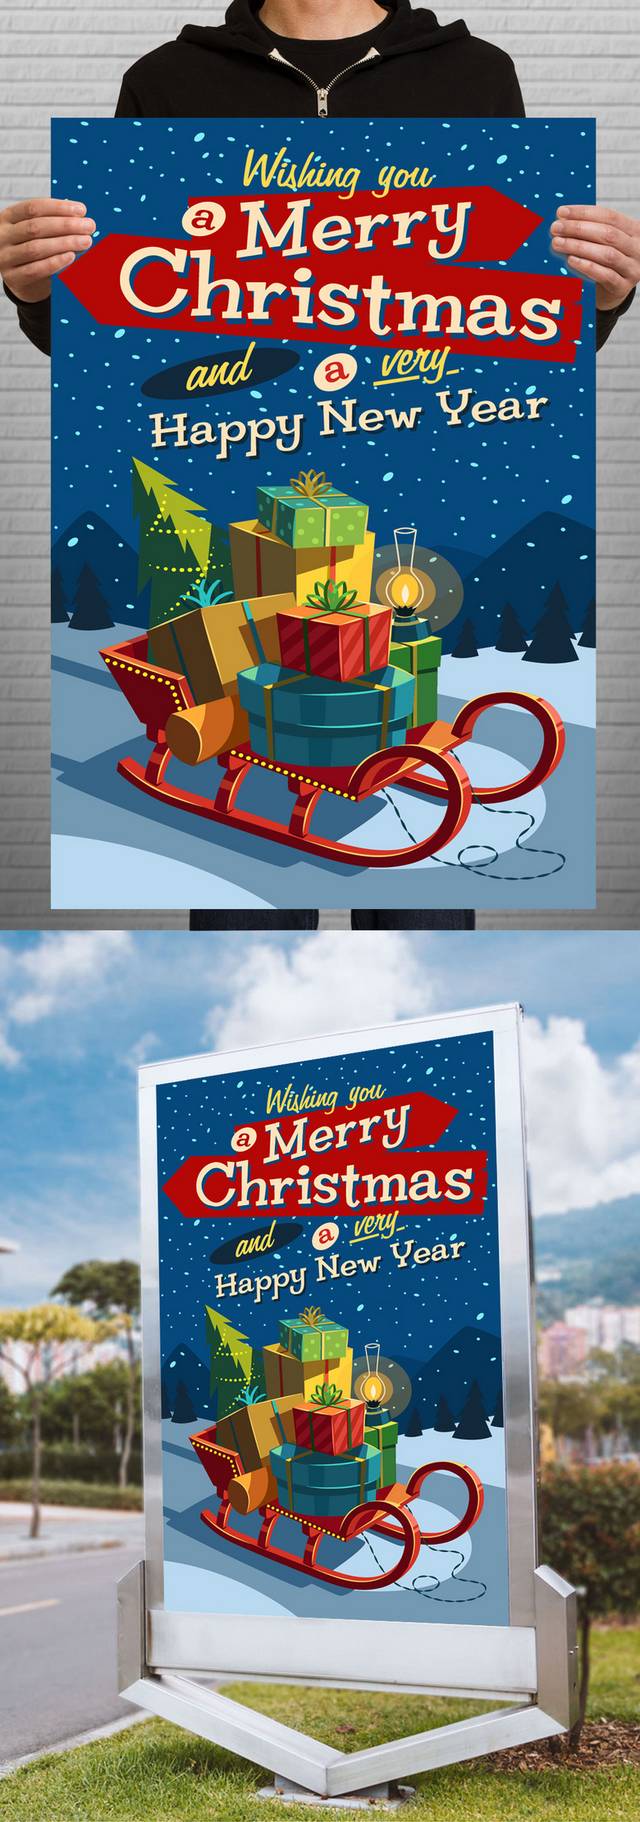 圣诞节创意广告海报